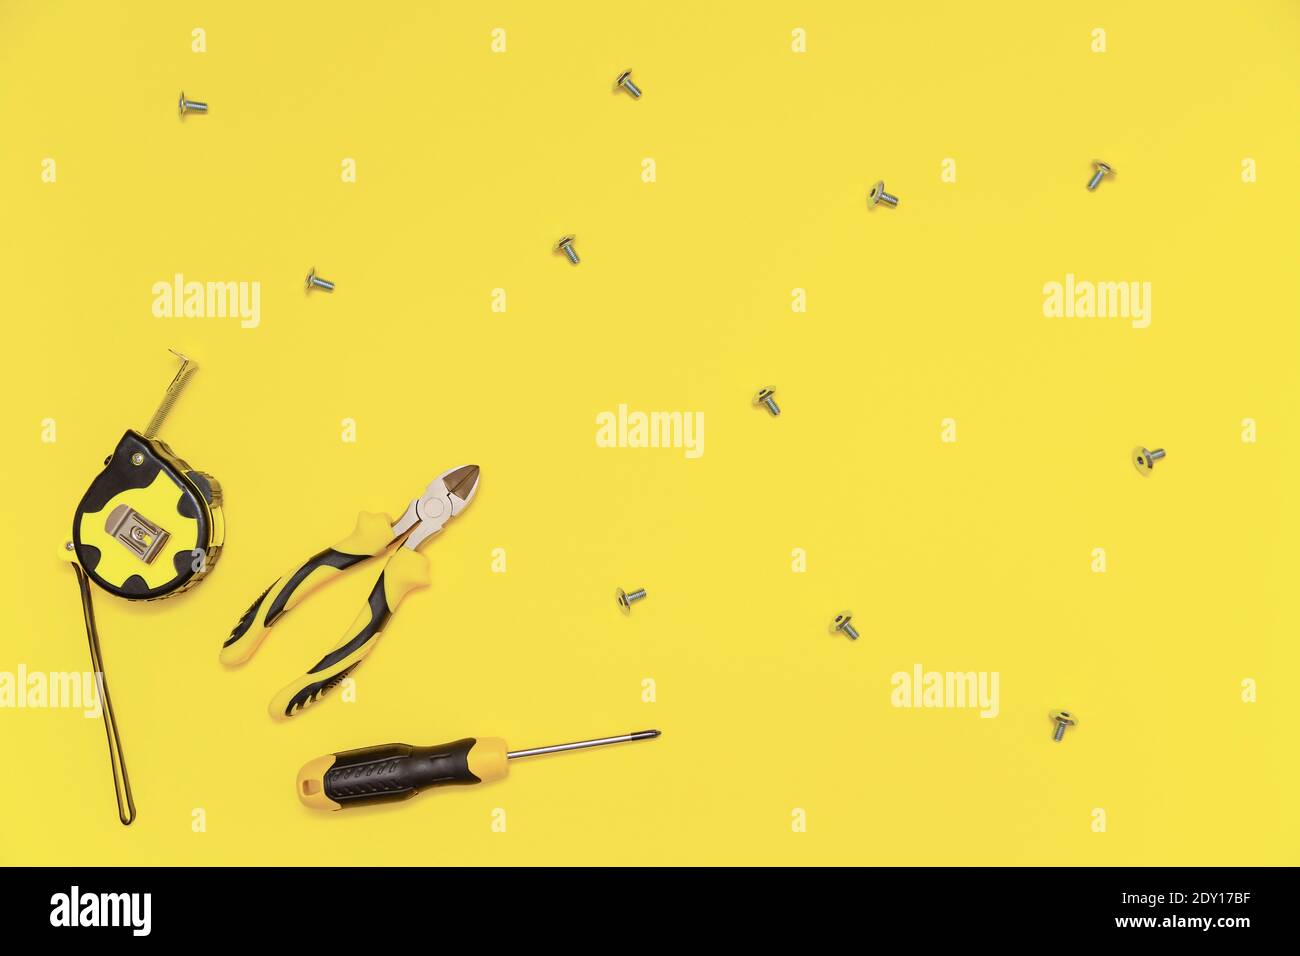 Eine Flachlage mit einem Satz von Tischwerkzeugen, Schraubendreher, Schneidzange, Maßband und Schrauben auf gelb leuchtenden Hintergrund. Farben des Jahres 2021. Stockfoto